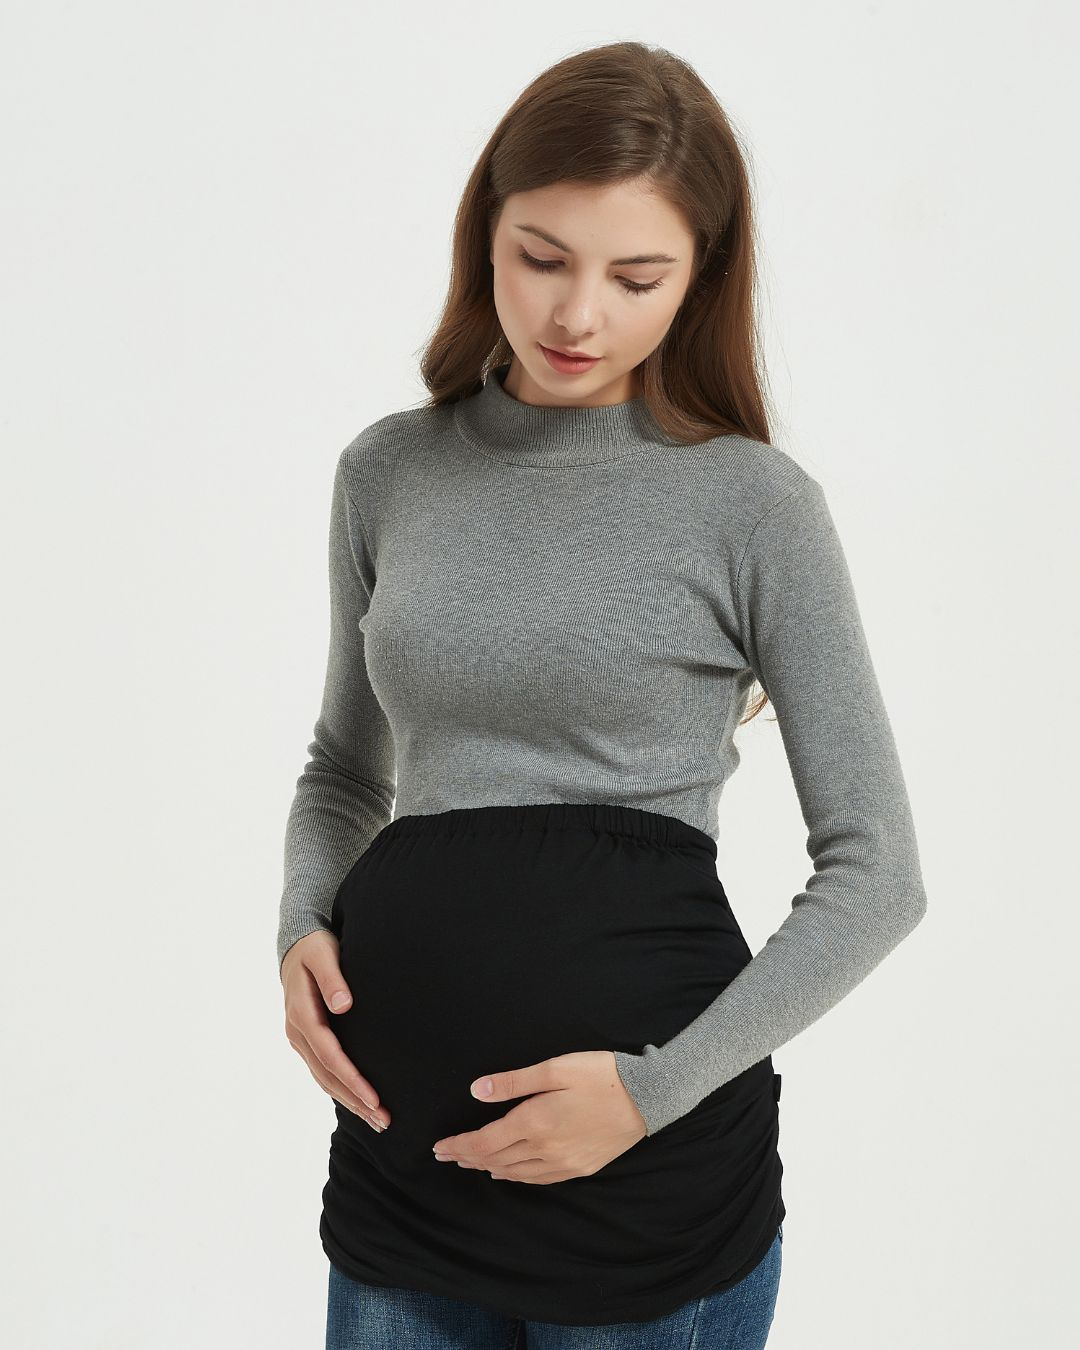 EMF Pregnancy Shield | Vest Anti-Radiation Belly Band